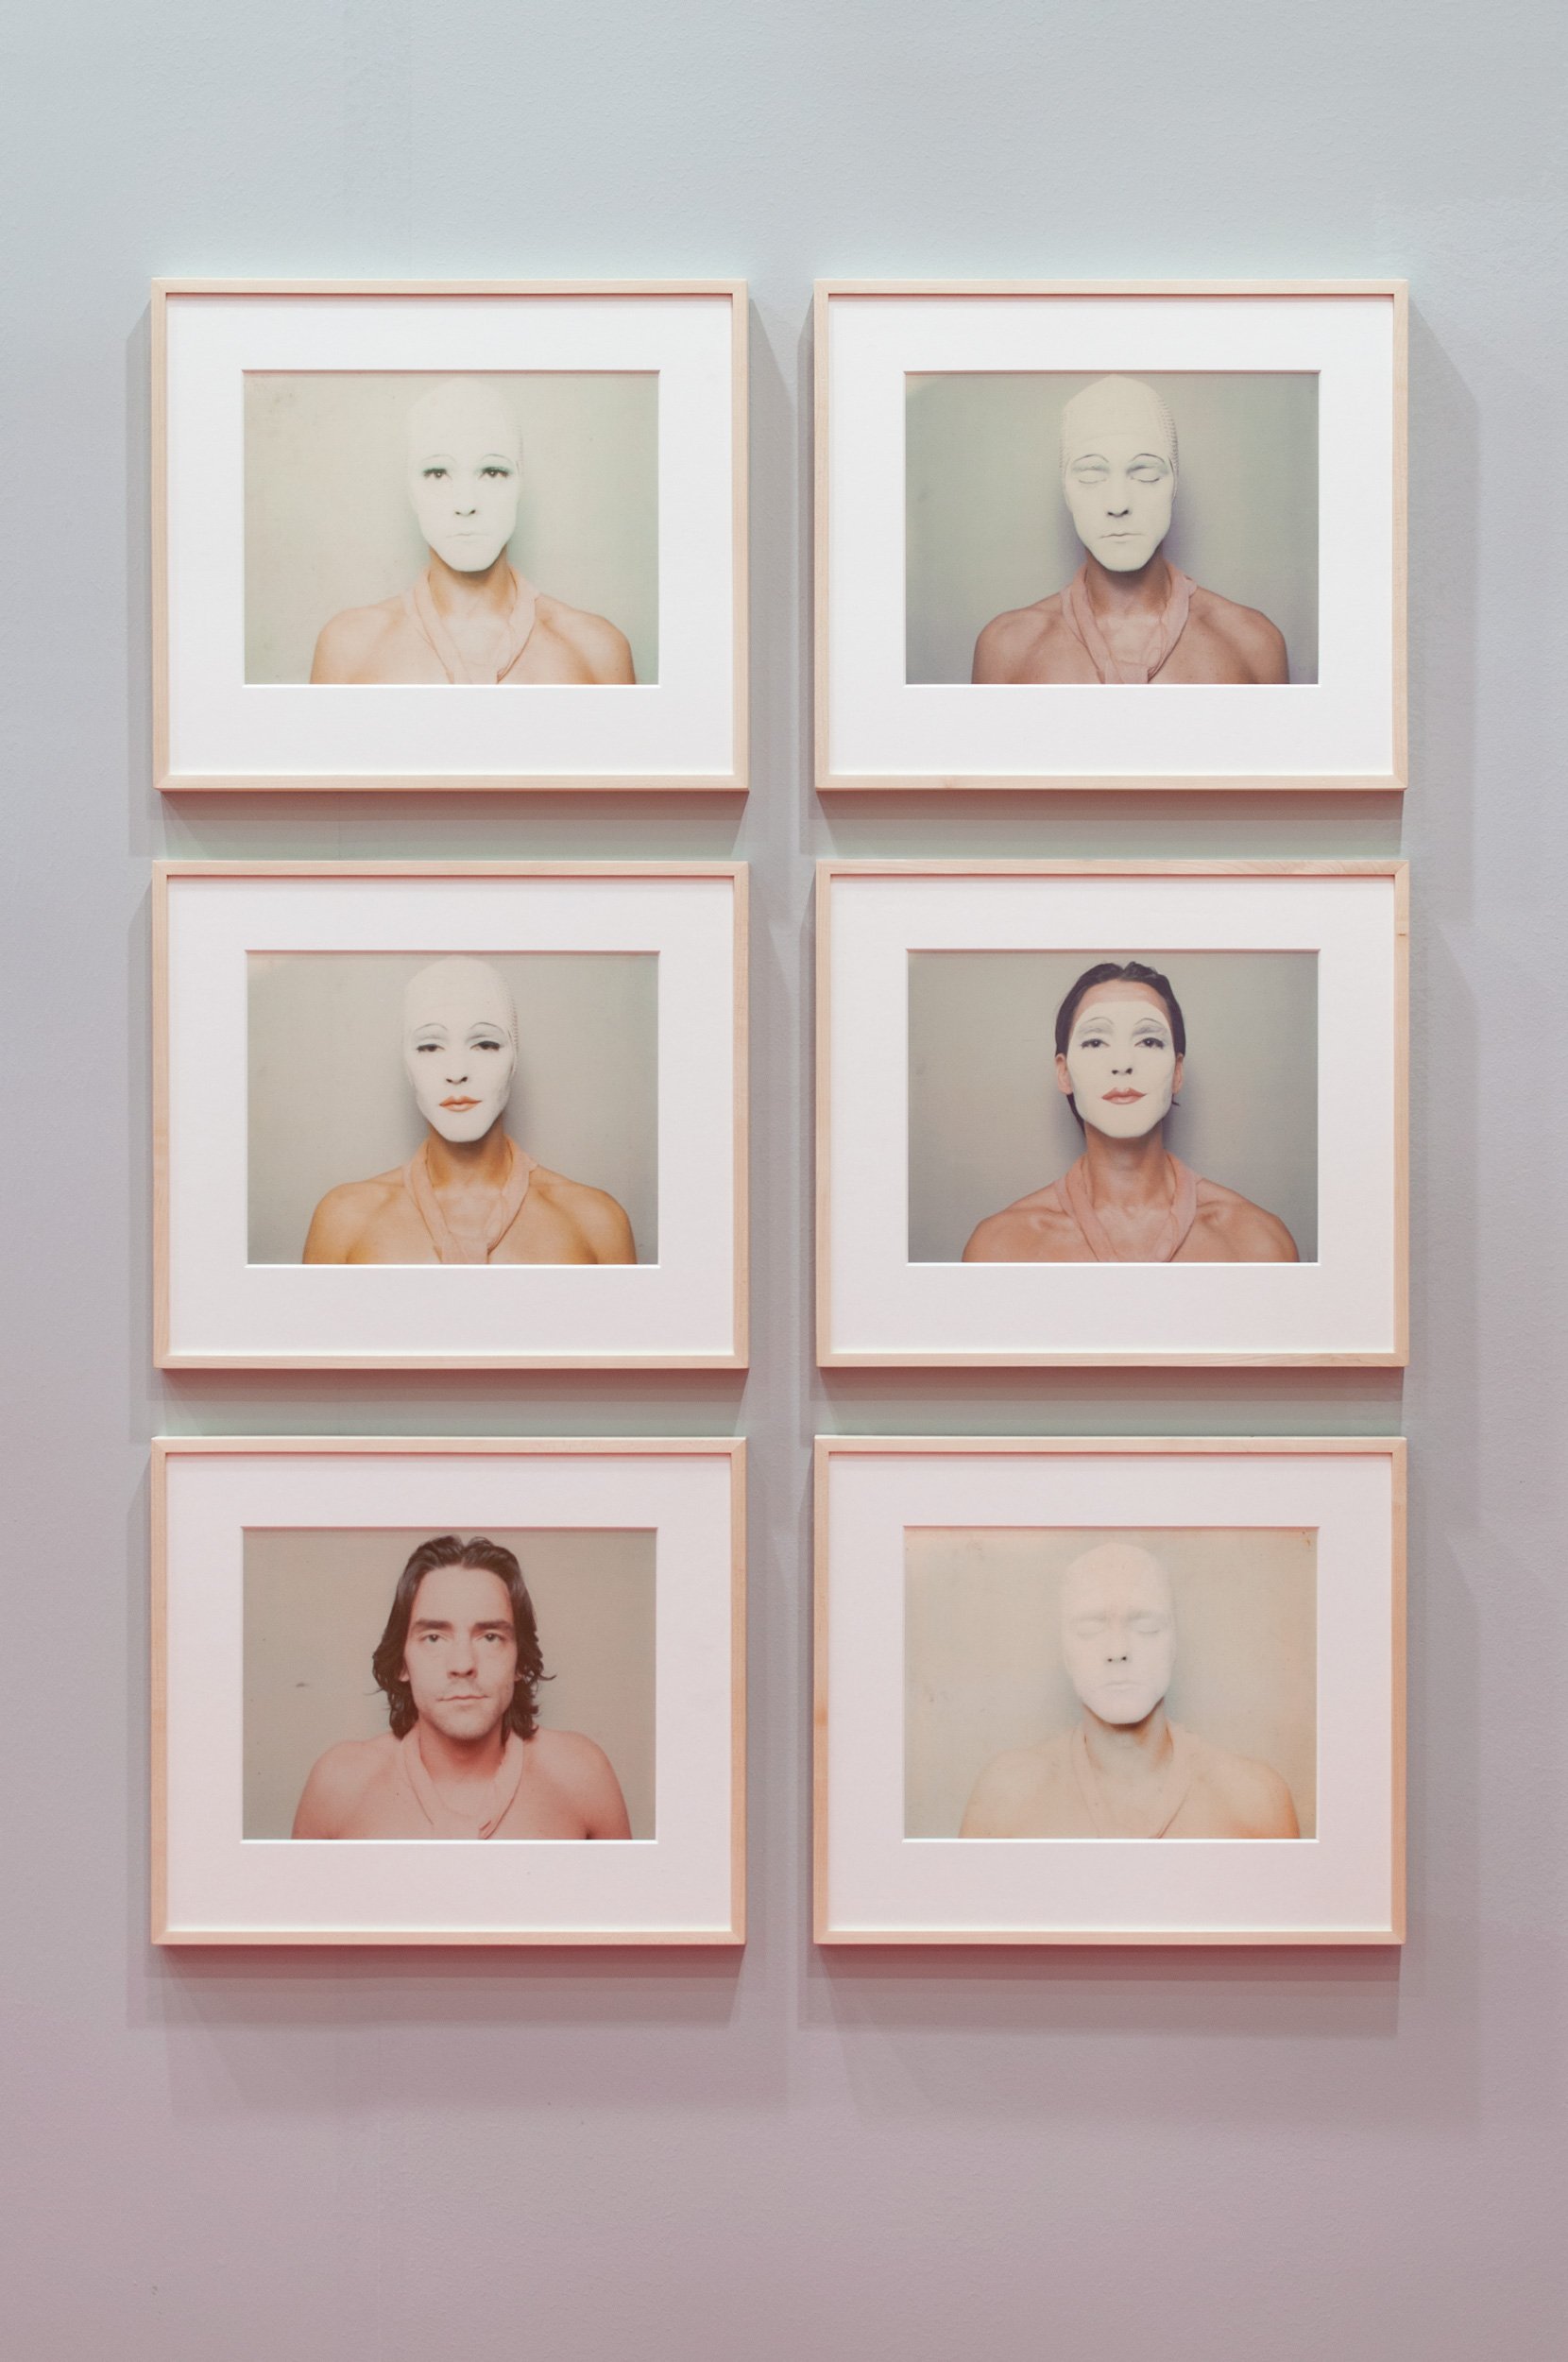 miart 2019, Galleria Richard Saltoun, Ulay, White Mask